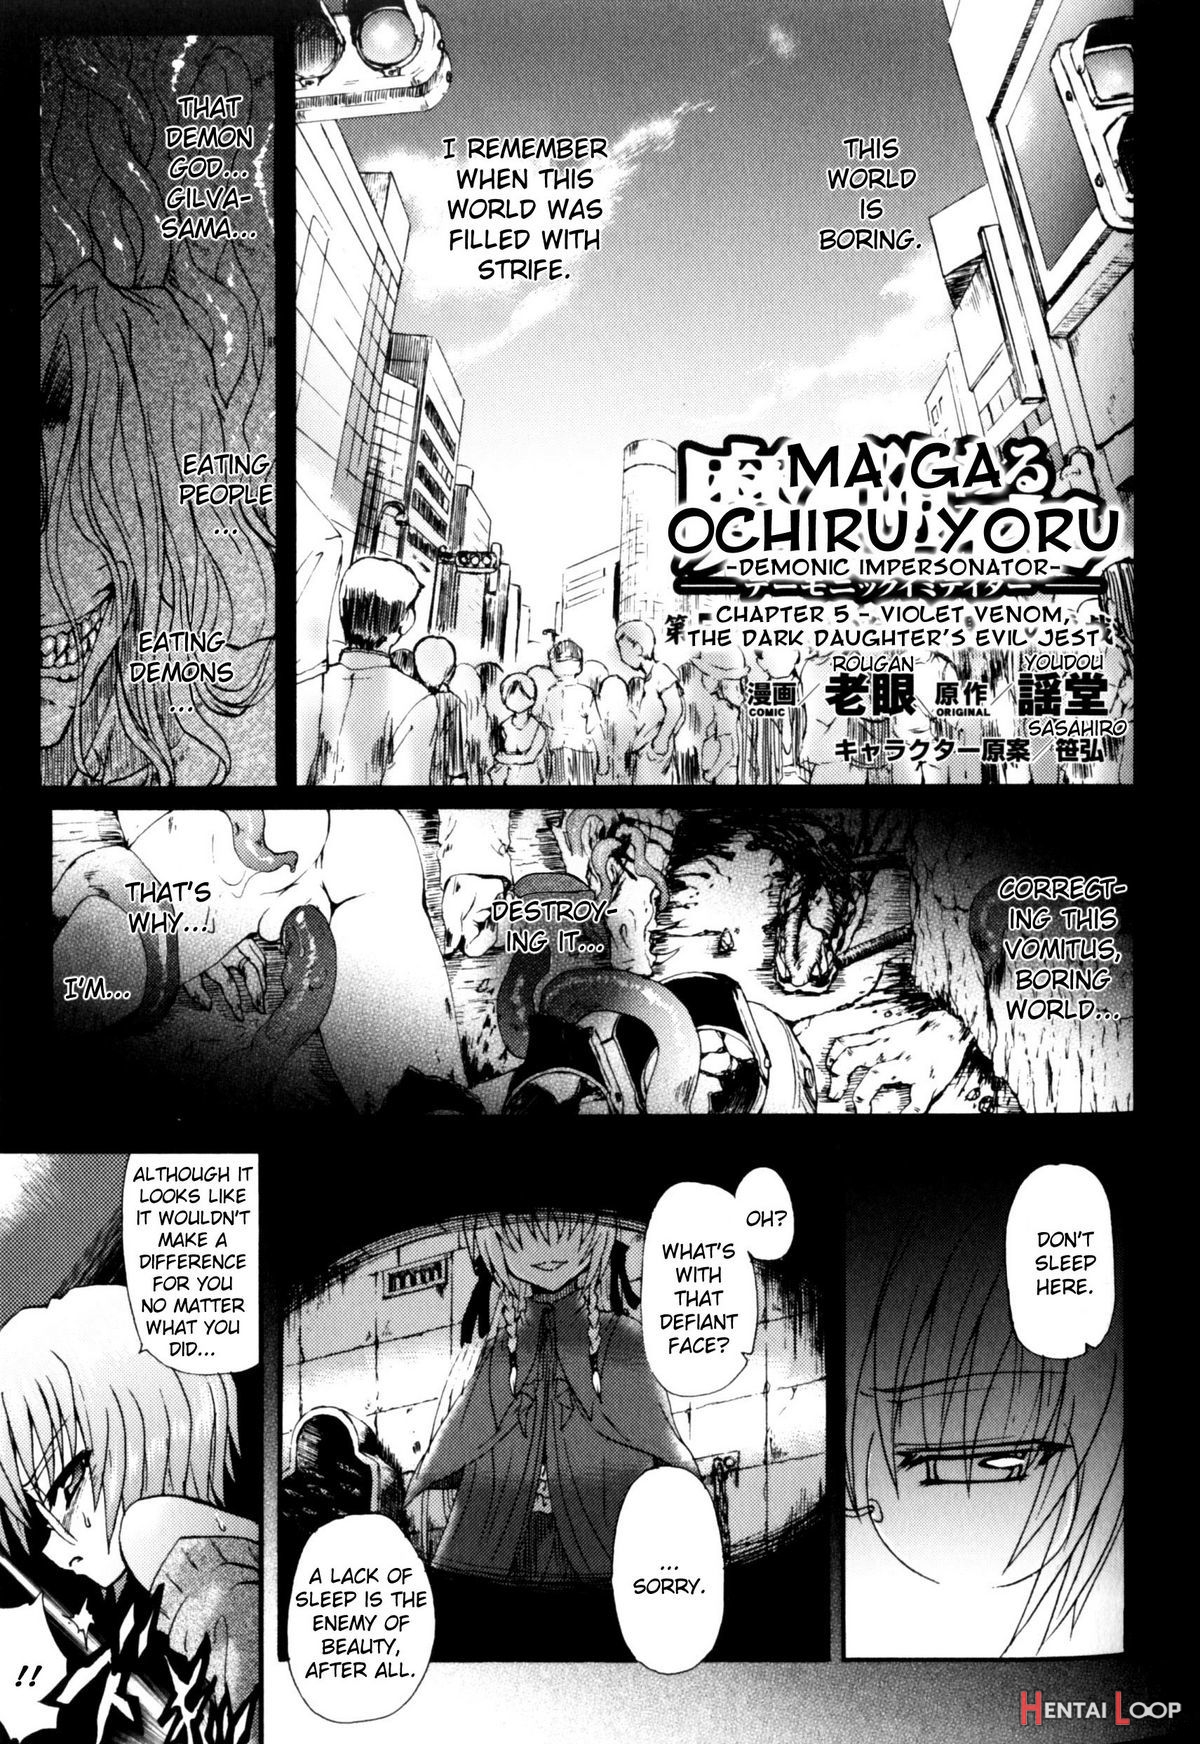 Ma Ga Ochiru Yoru05 page 93